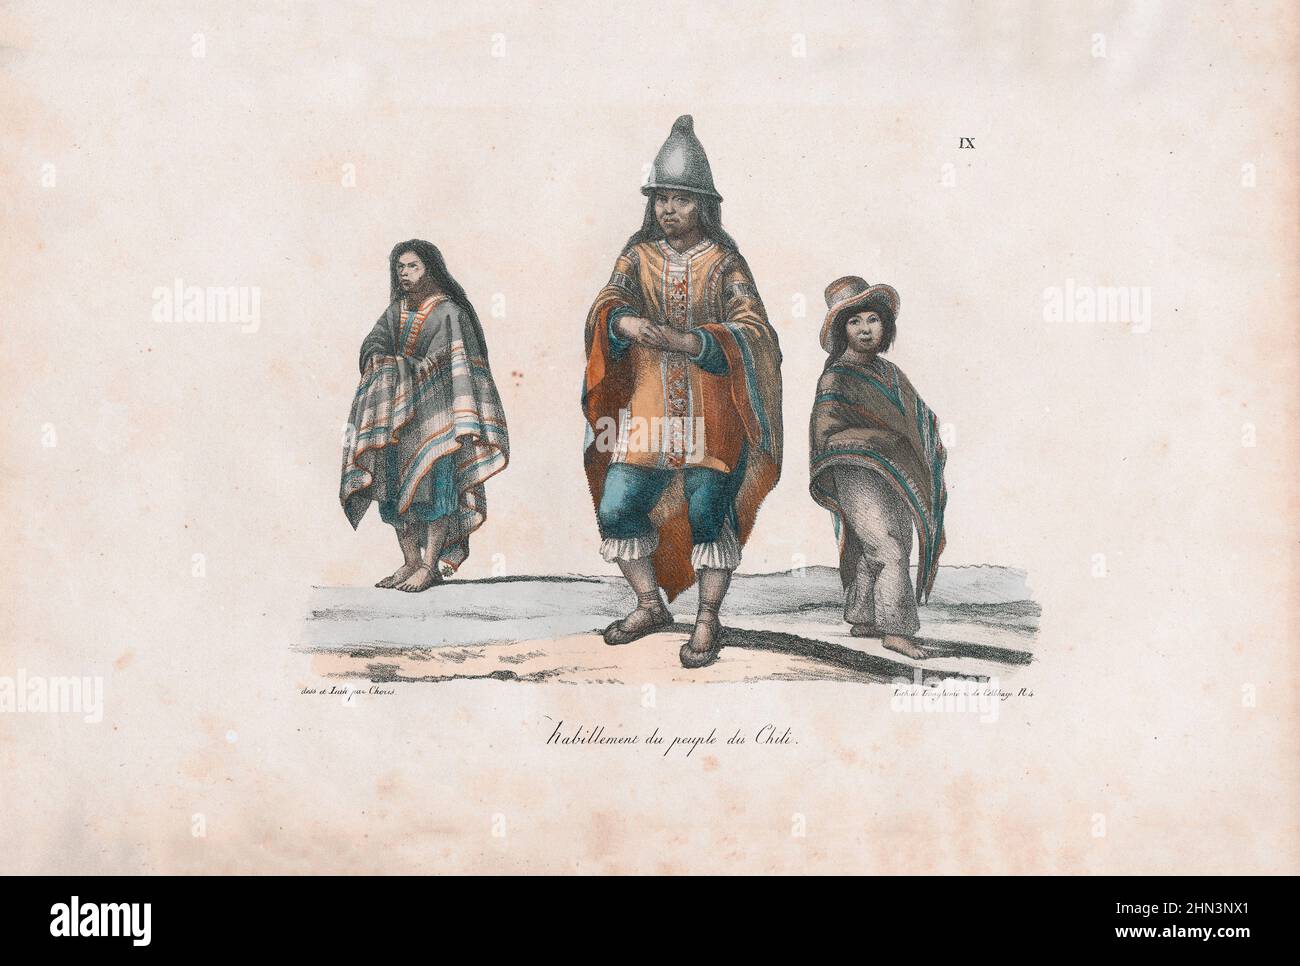 Litografia a colori dell'abbigliamento del popolo cileno. 1822, di Louis Choris. Foto Stock